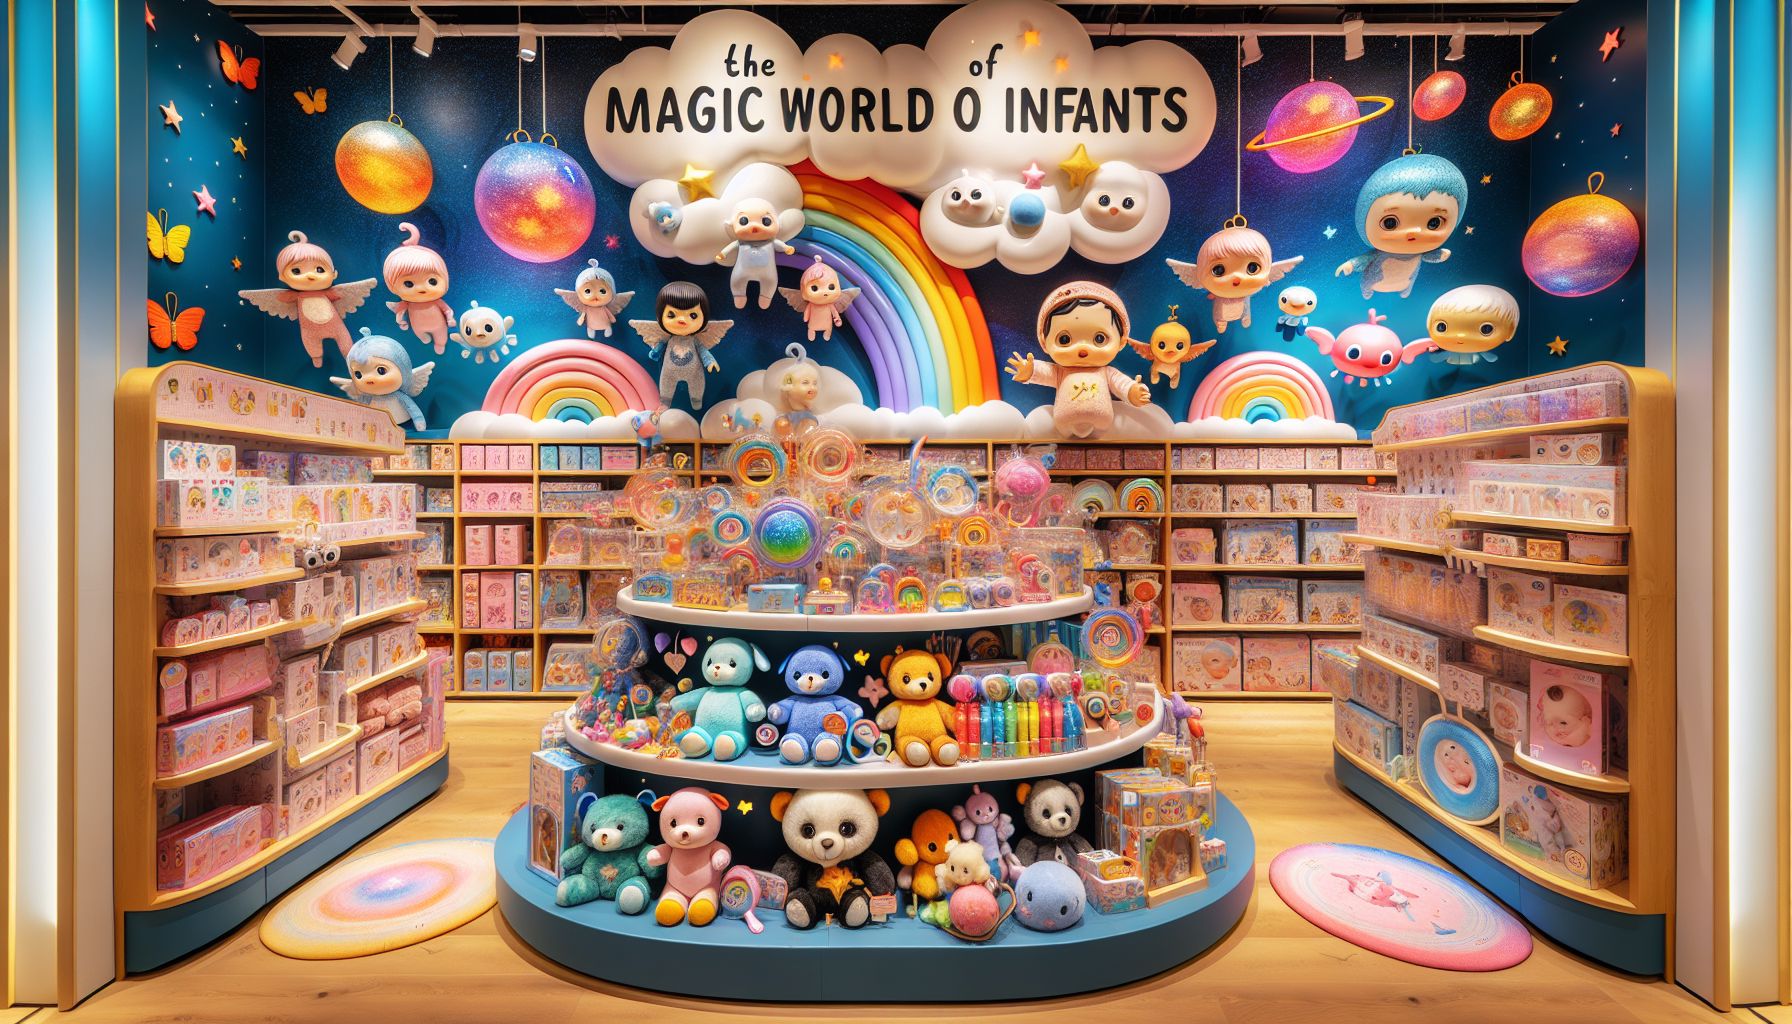 Bebisarnas magiska värld – Utforska Butiken full av babyleksaker